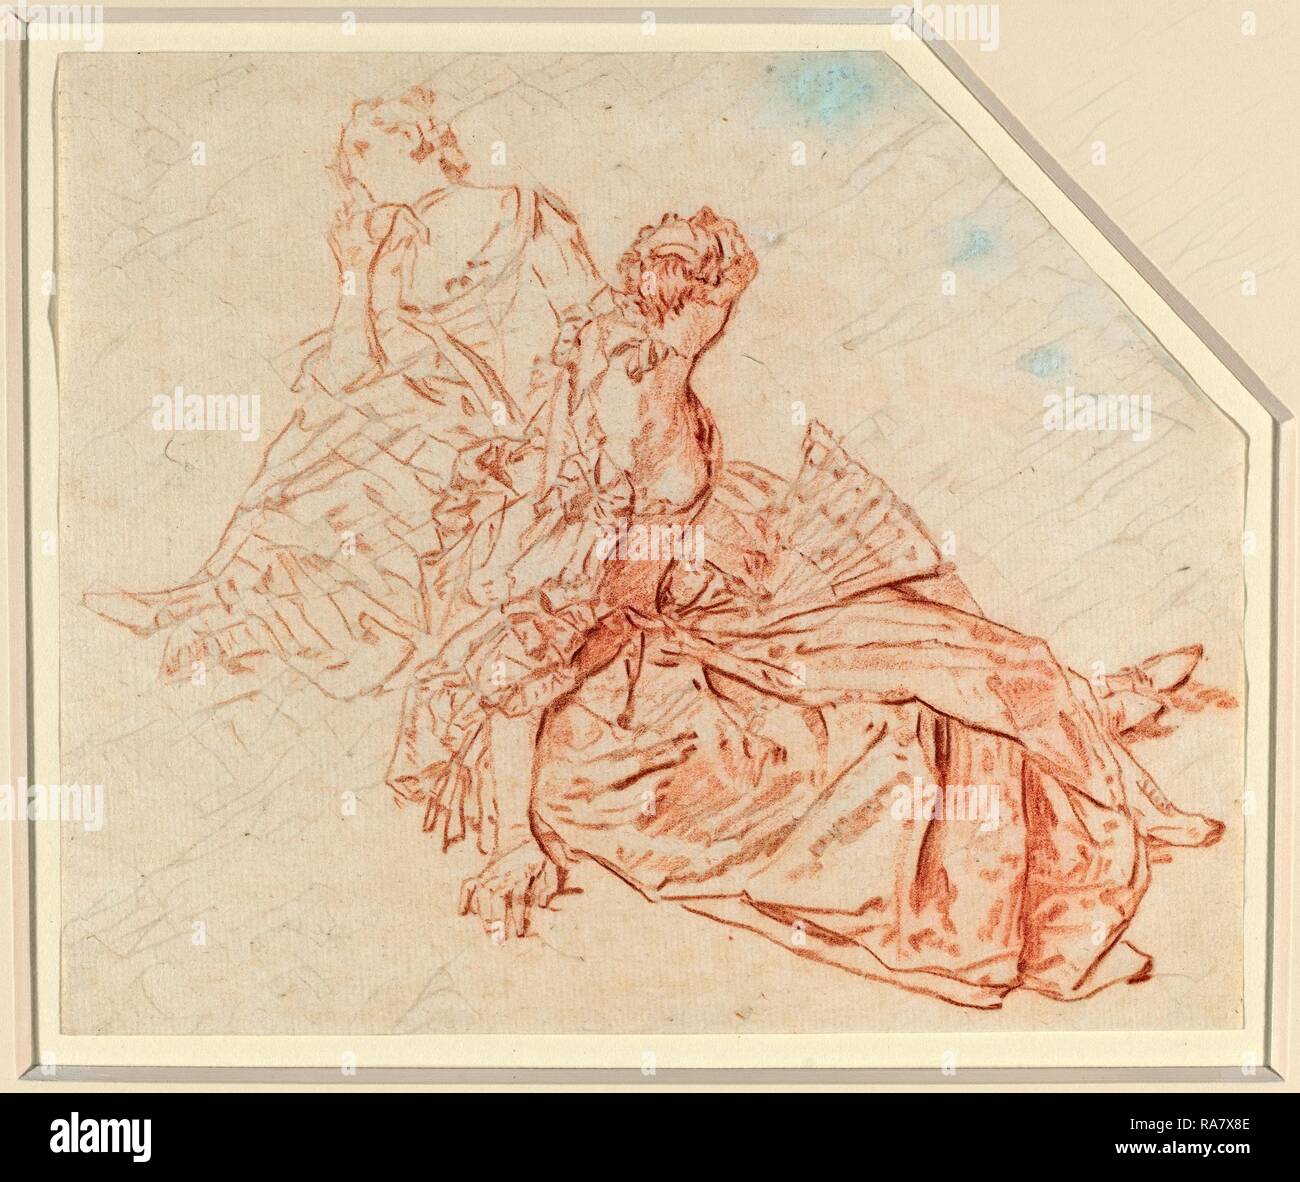 Nicolas Lancret (Français, 1690 - 1743), deux femmes assises, craie rouge sur papier vergé. Repensé par Gibon. L'art classique repensé Banque D'Images